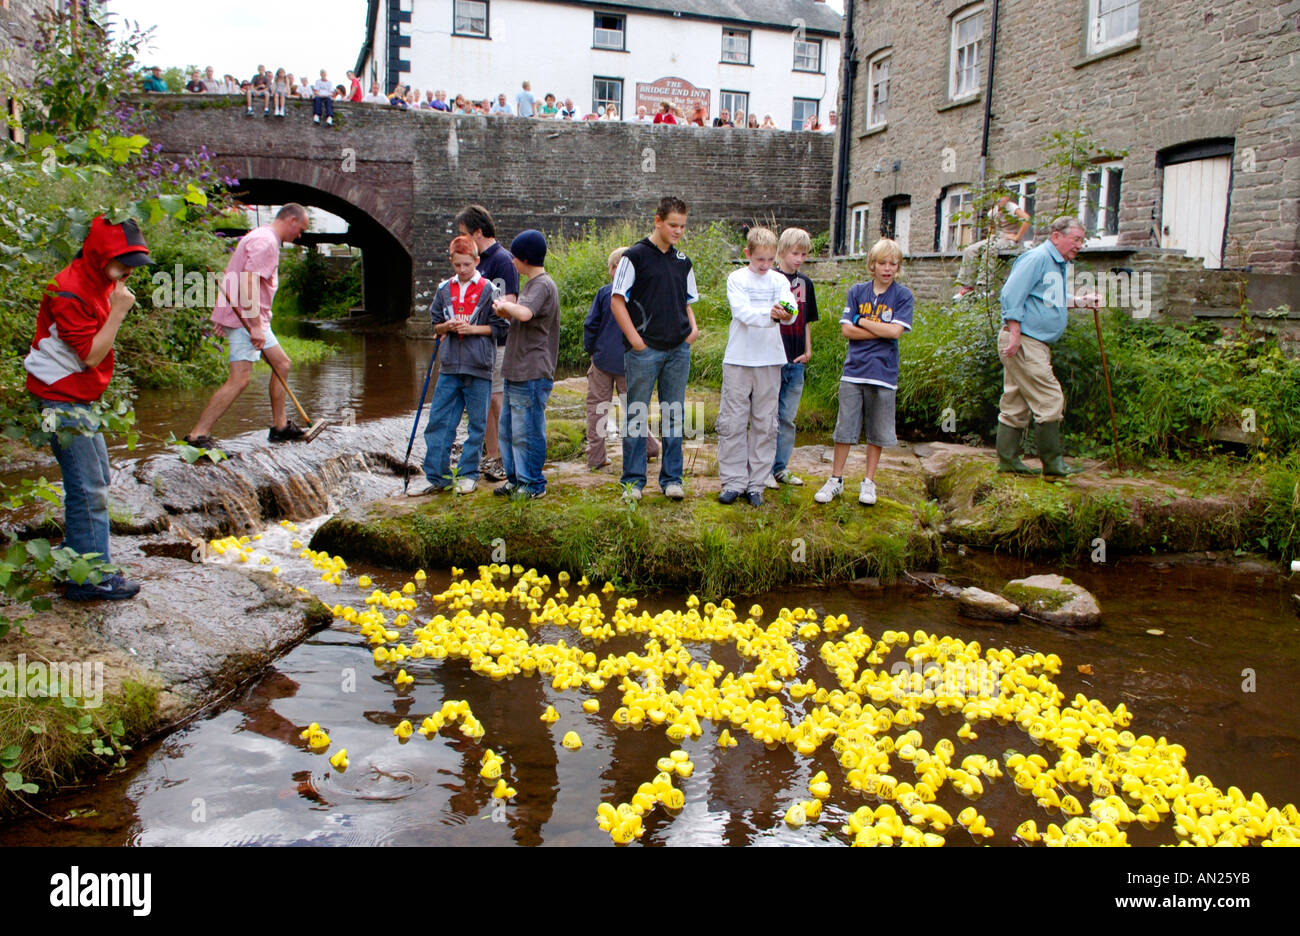 Gemeinschaft gelb Kunststoff Entenrennen am Fluss Ennig Teil des jährlichen Talgarth Festival der Black Mountains Powys Mid Wales UK Stockfoto